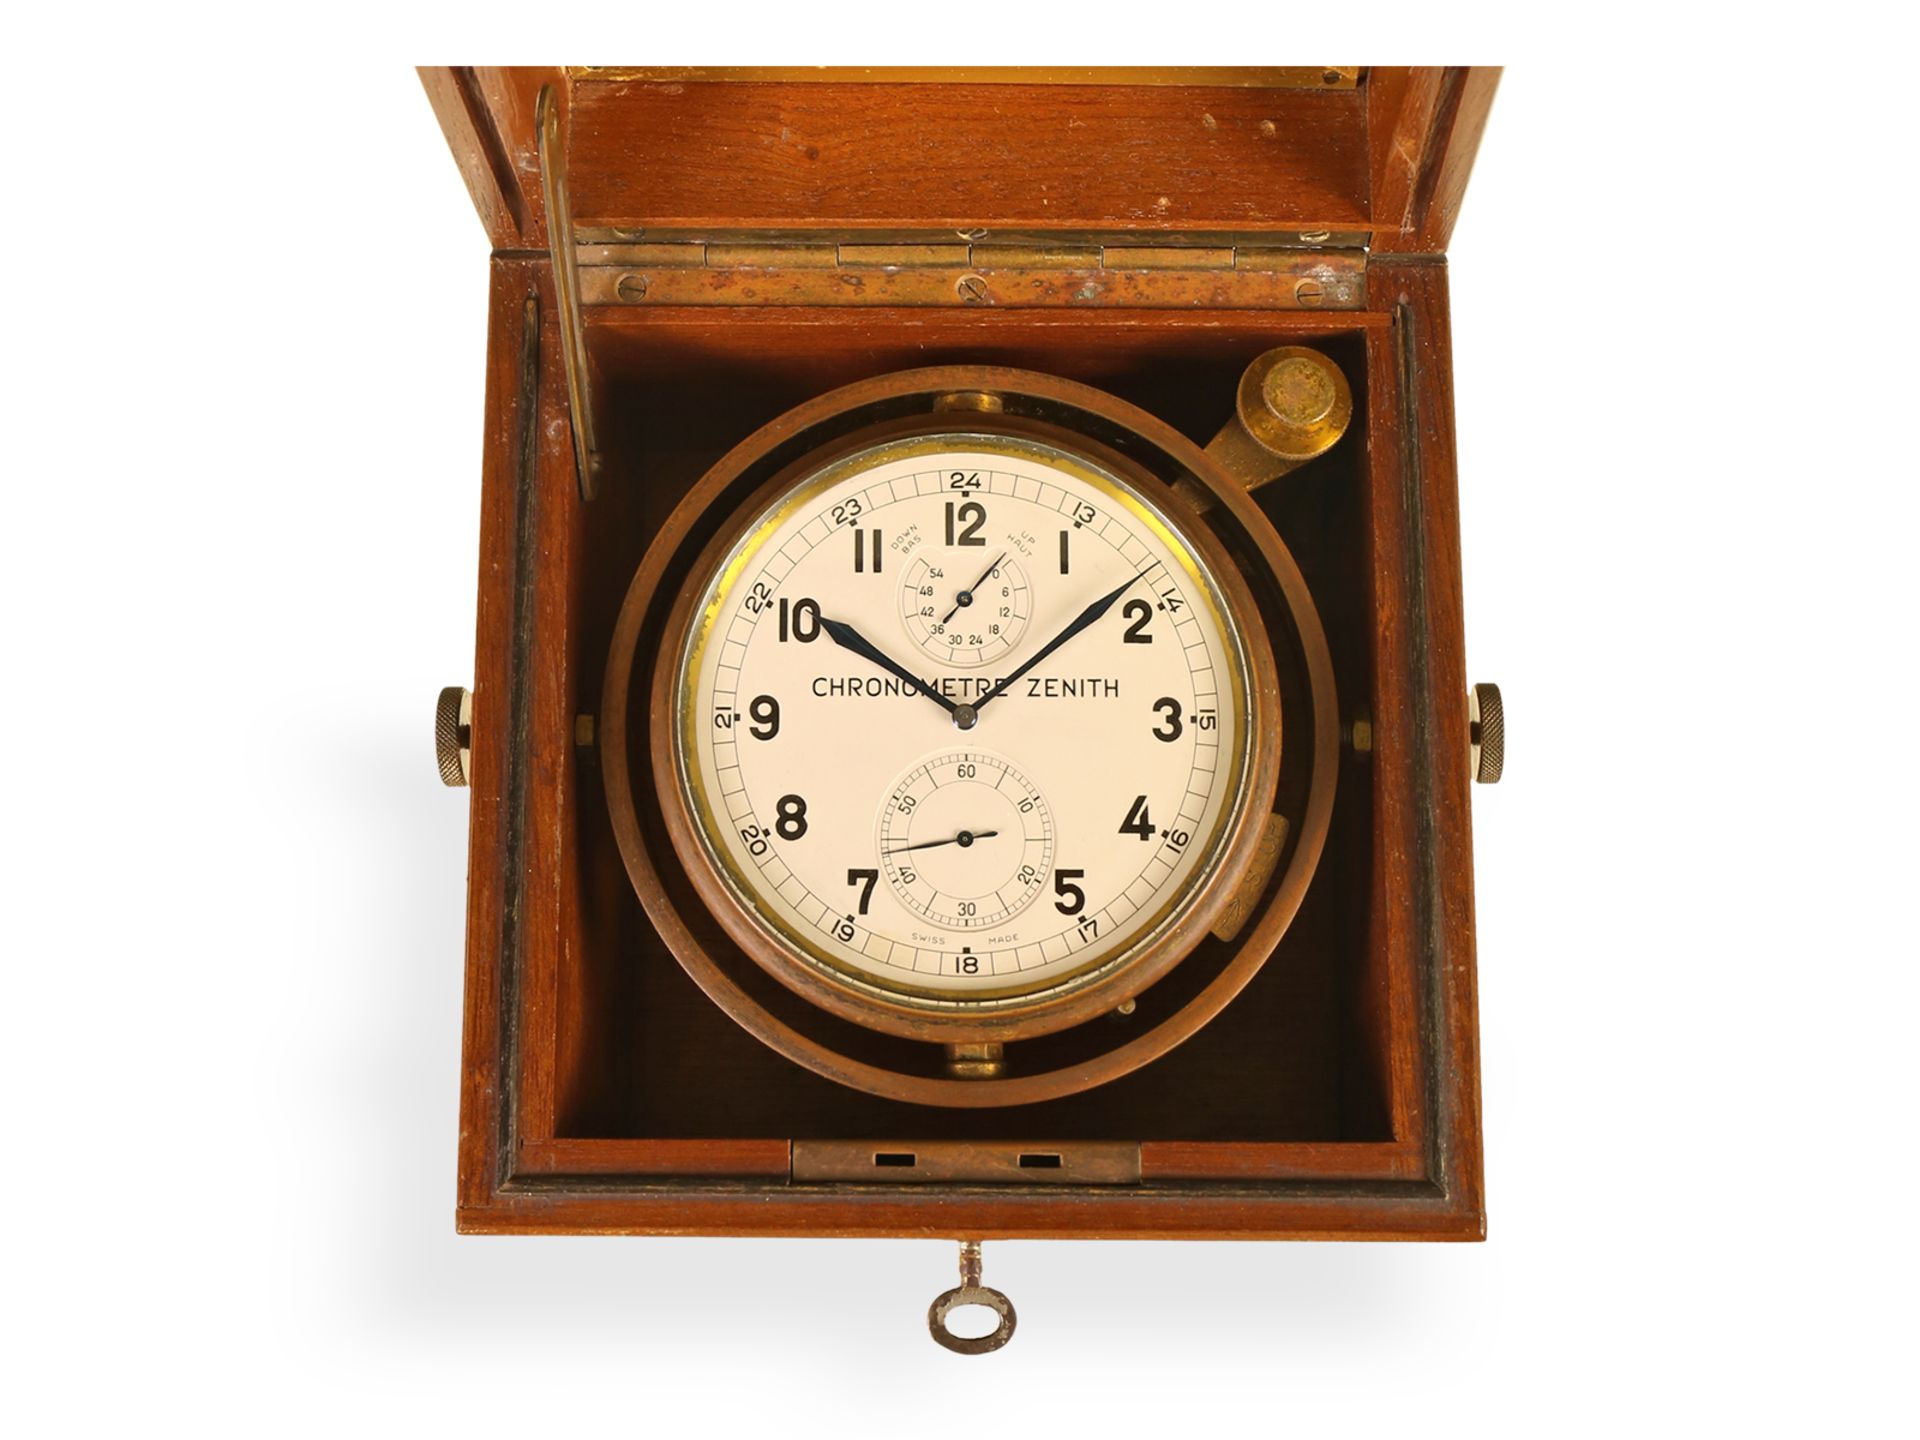 Hervorragend erhaltenes Zenith Marinechronometer, 30er Jahre - Bild 2 aus 7